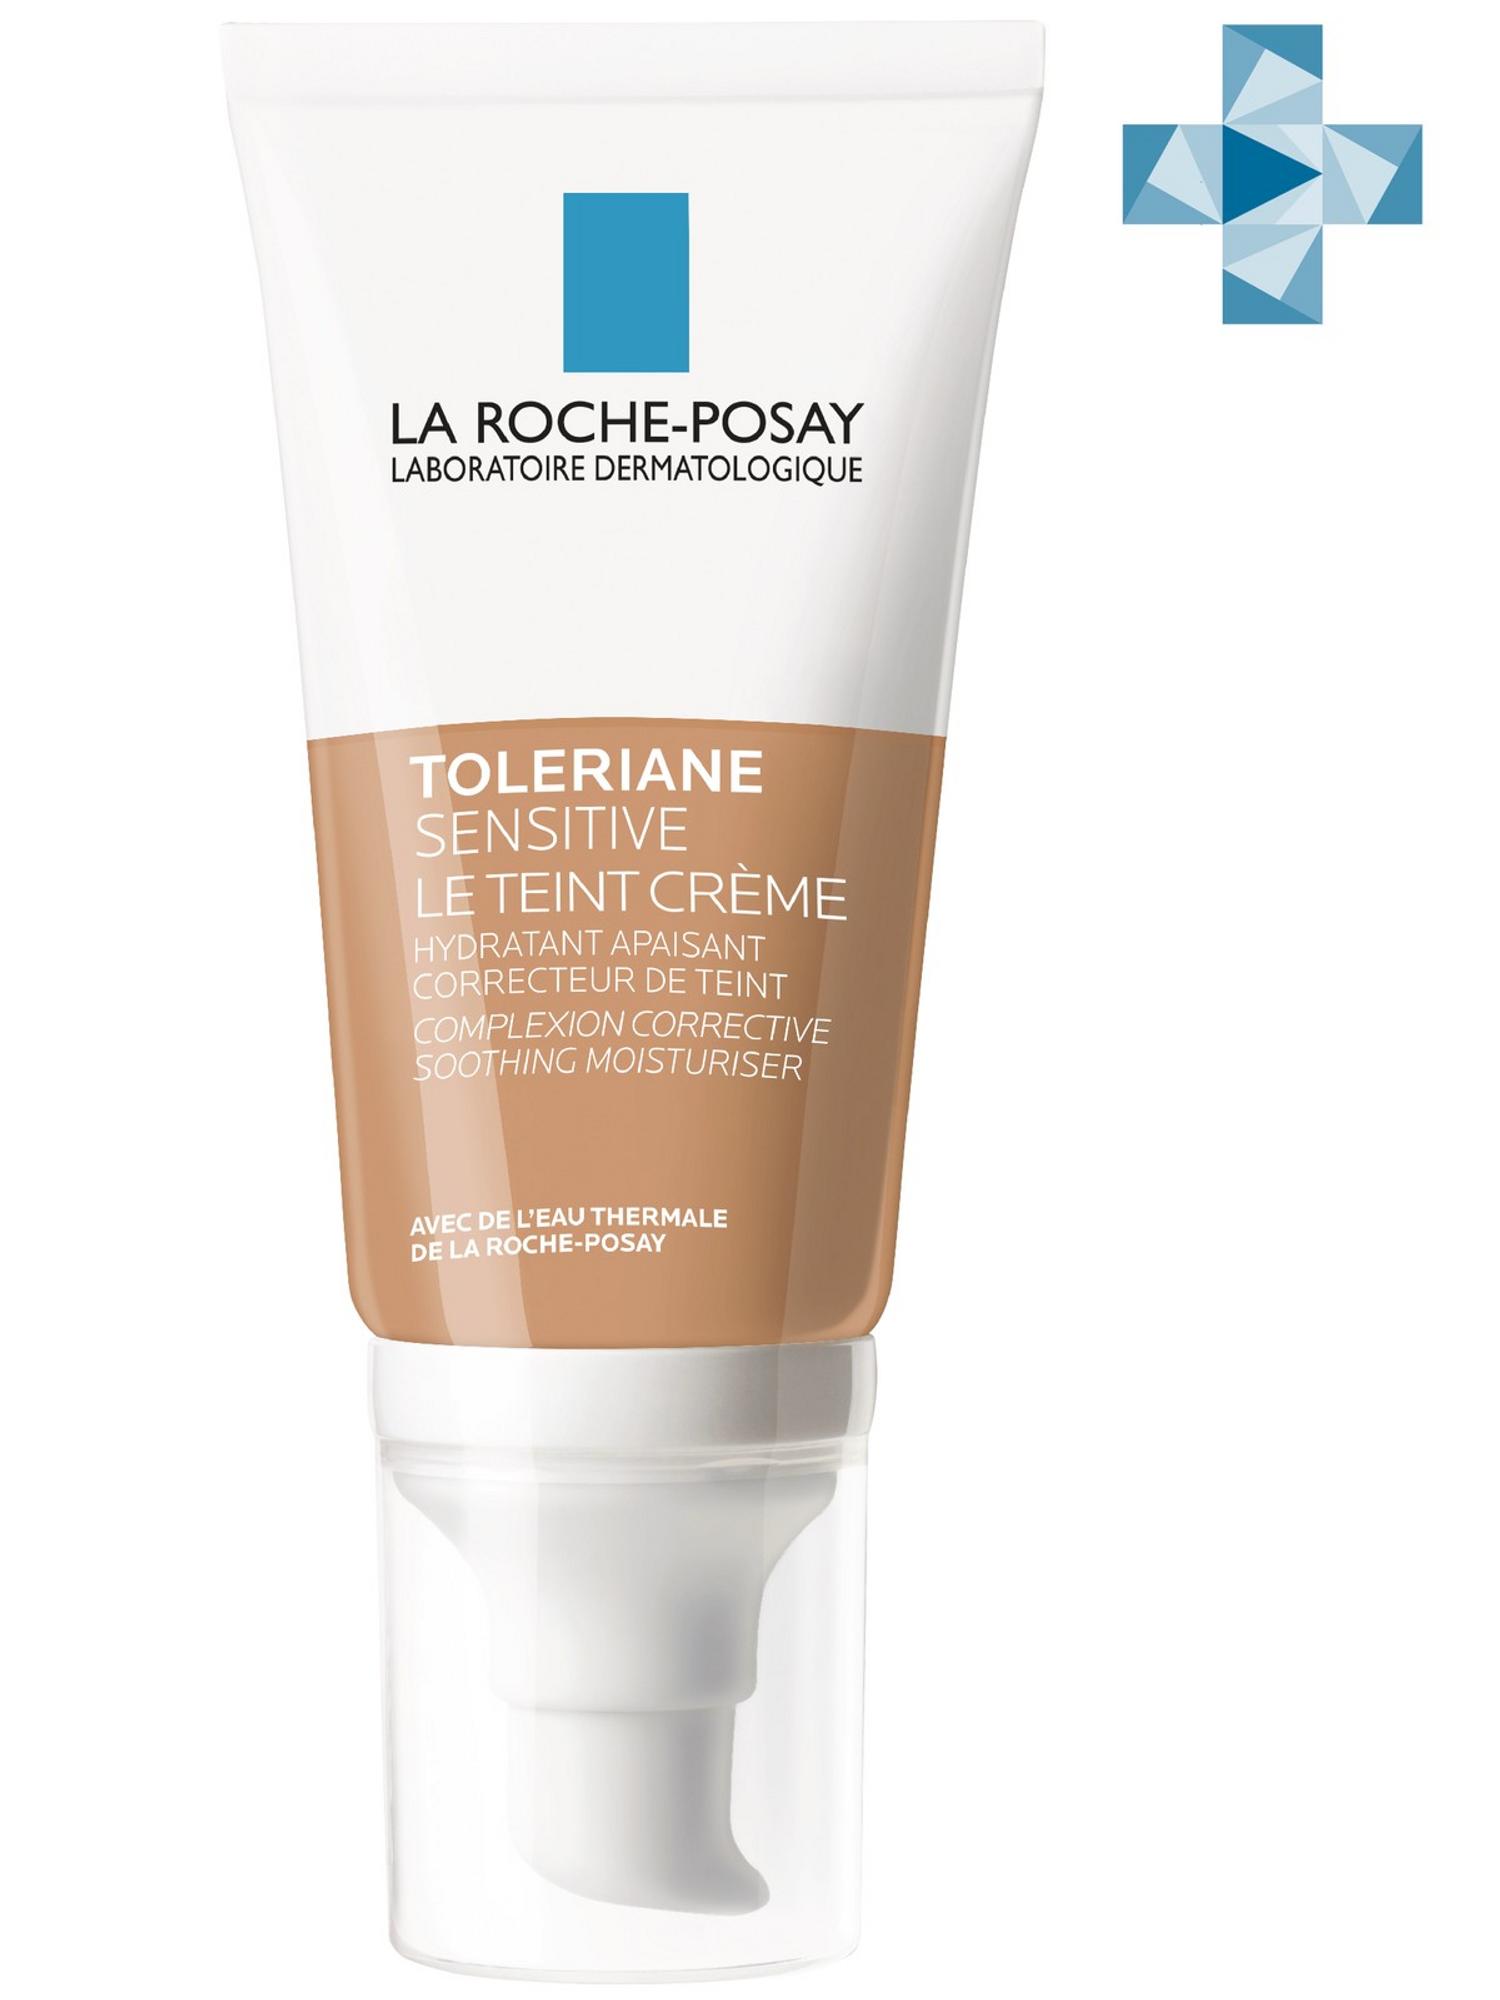 La Roche-Posay Тонирующий увлажняющий крем для чувствительной кожи, натуральный оттенок, 50 мл (La Roche-Posay, Toleriane)